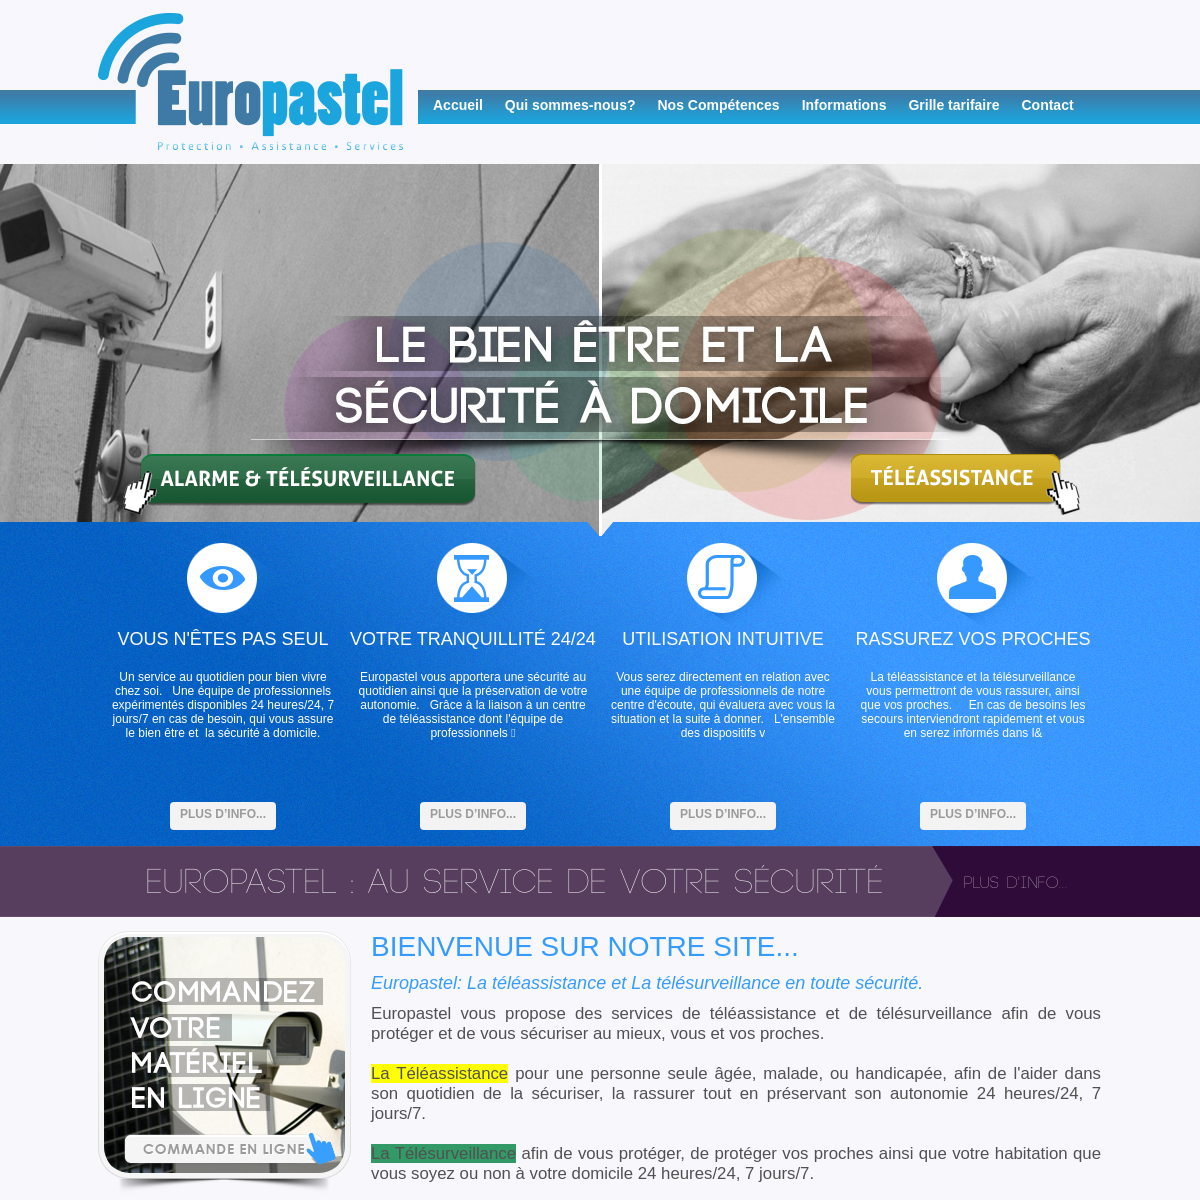 A complete backup of europastel.fr